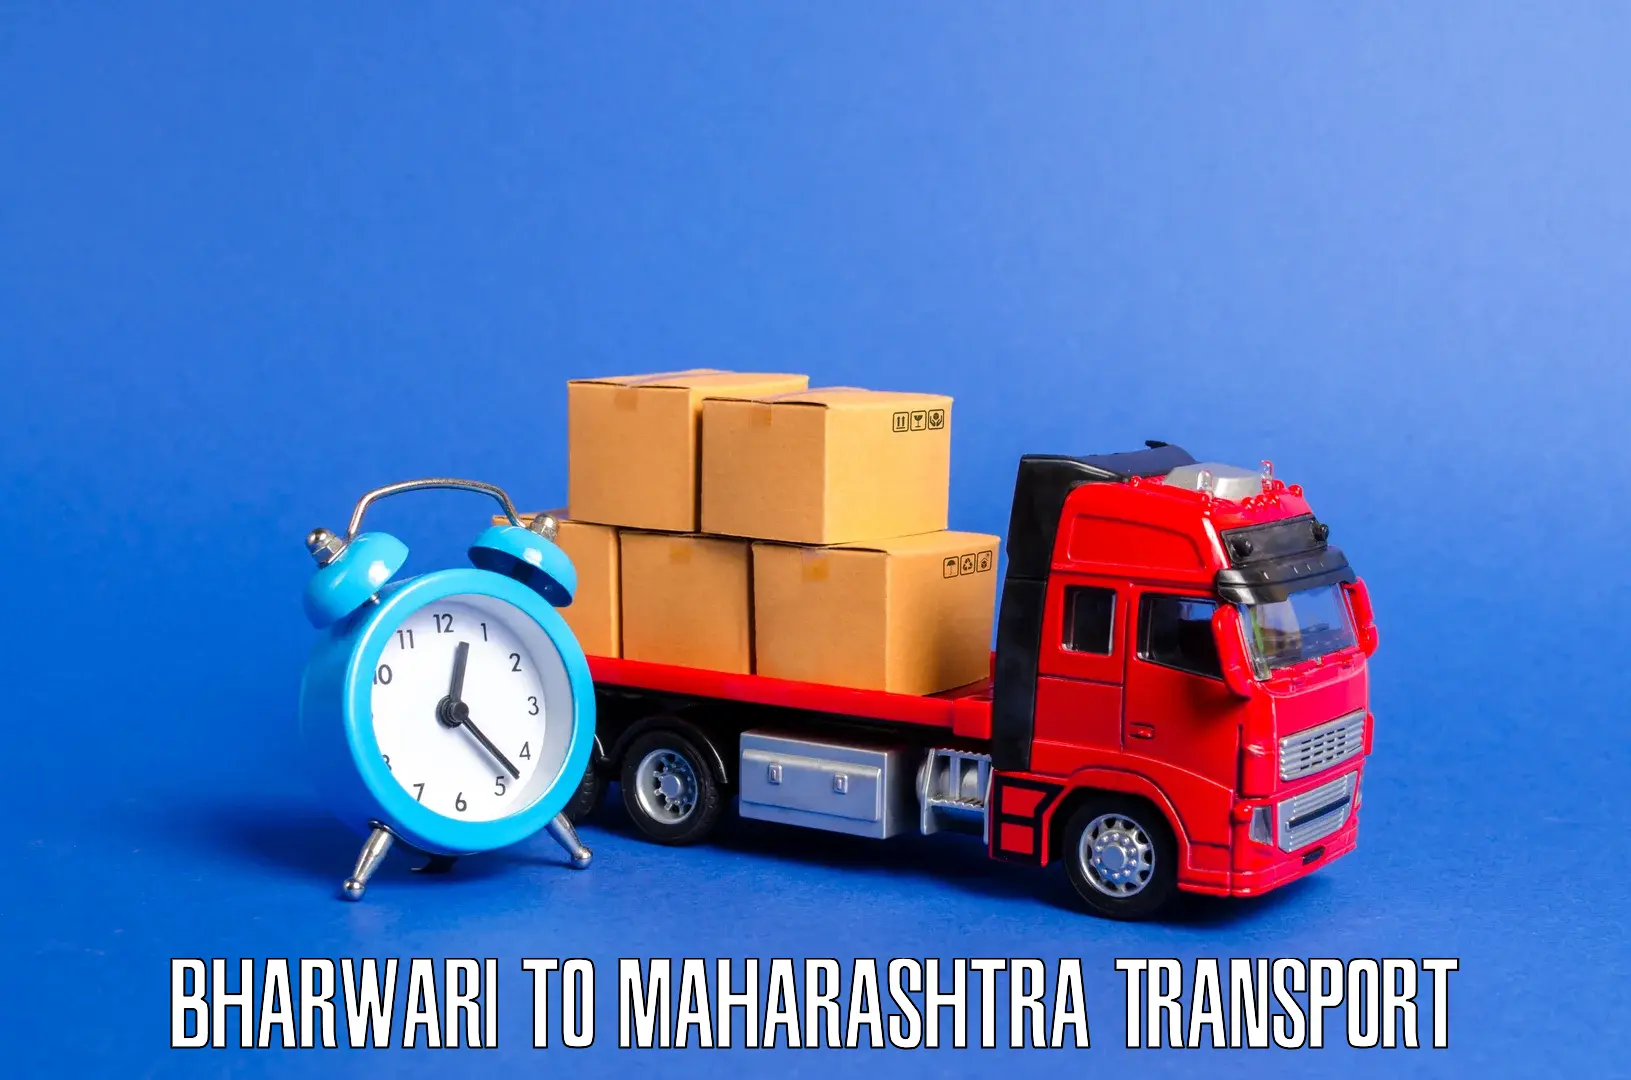 Furniture transport service Bharwari to Mantha